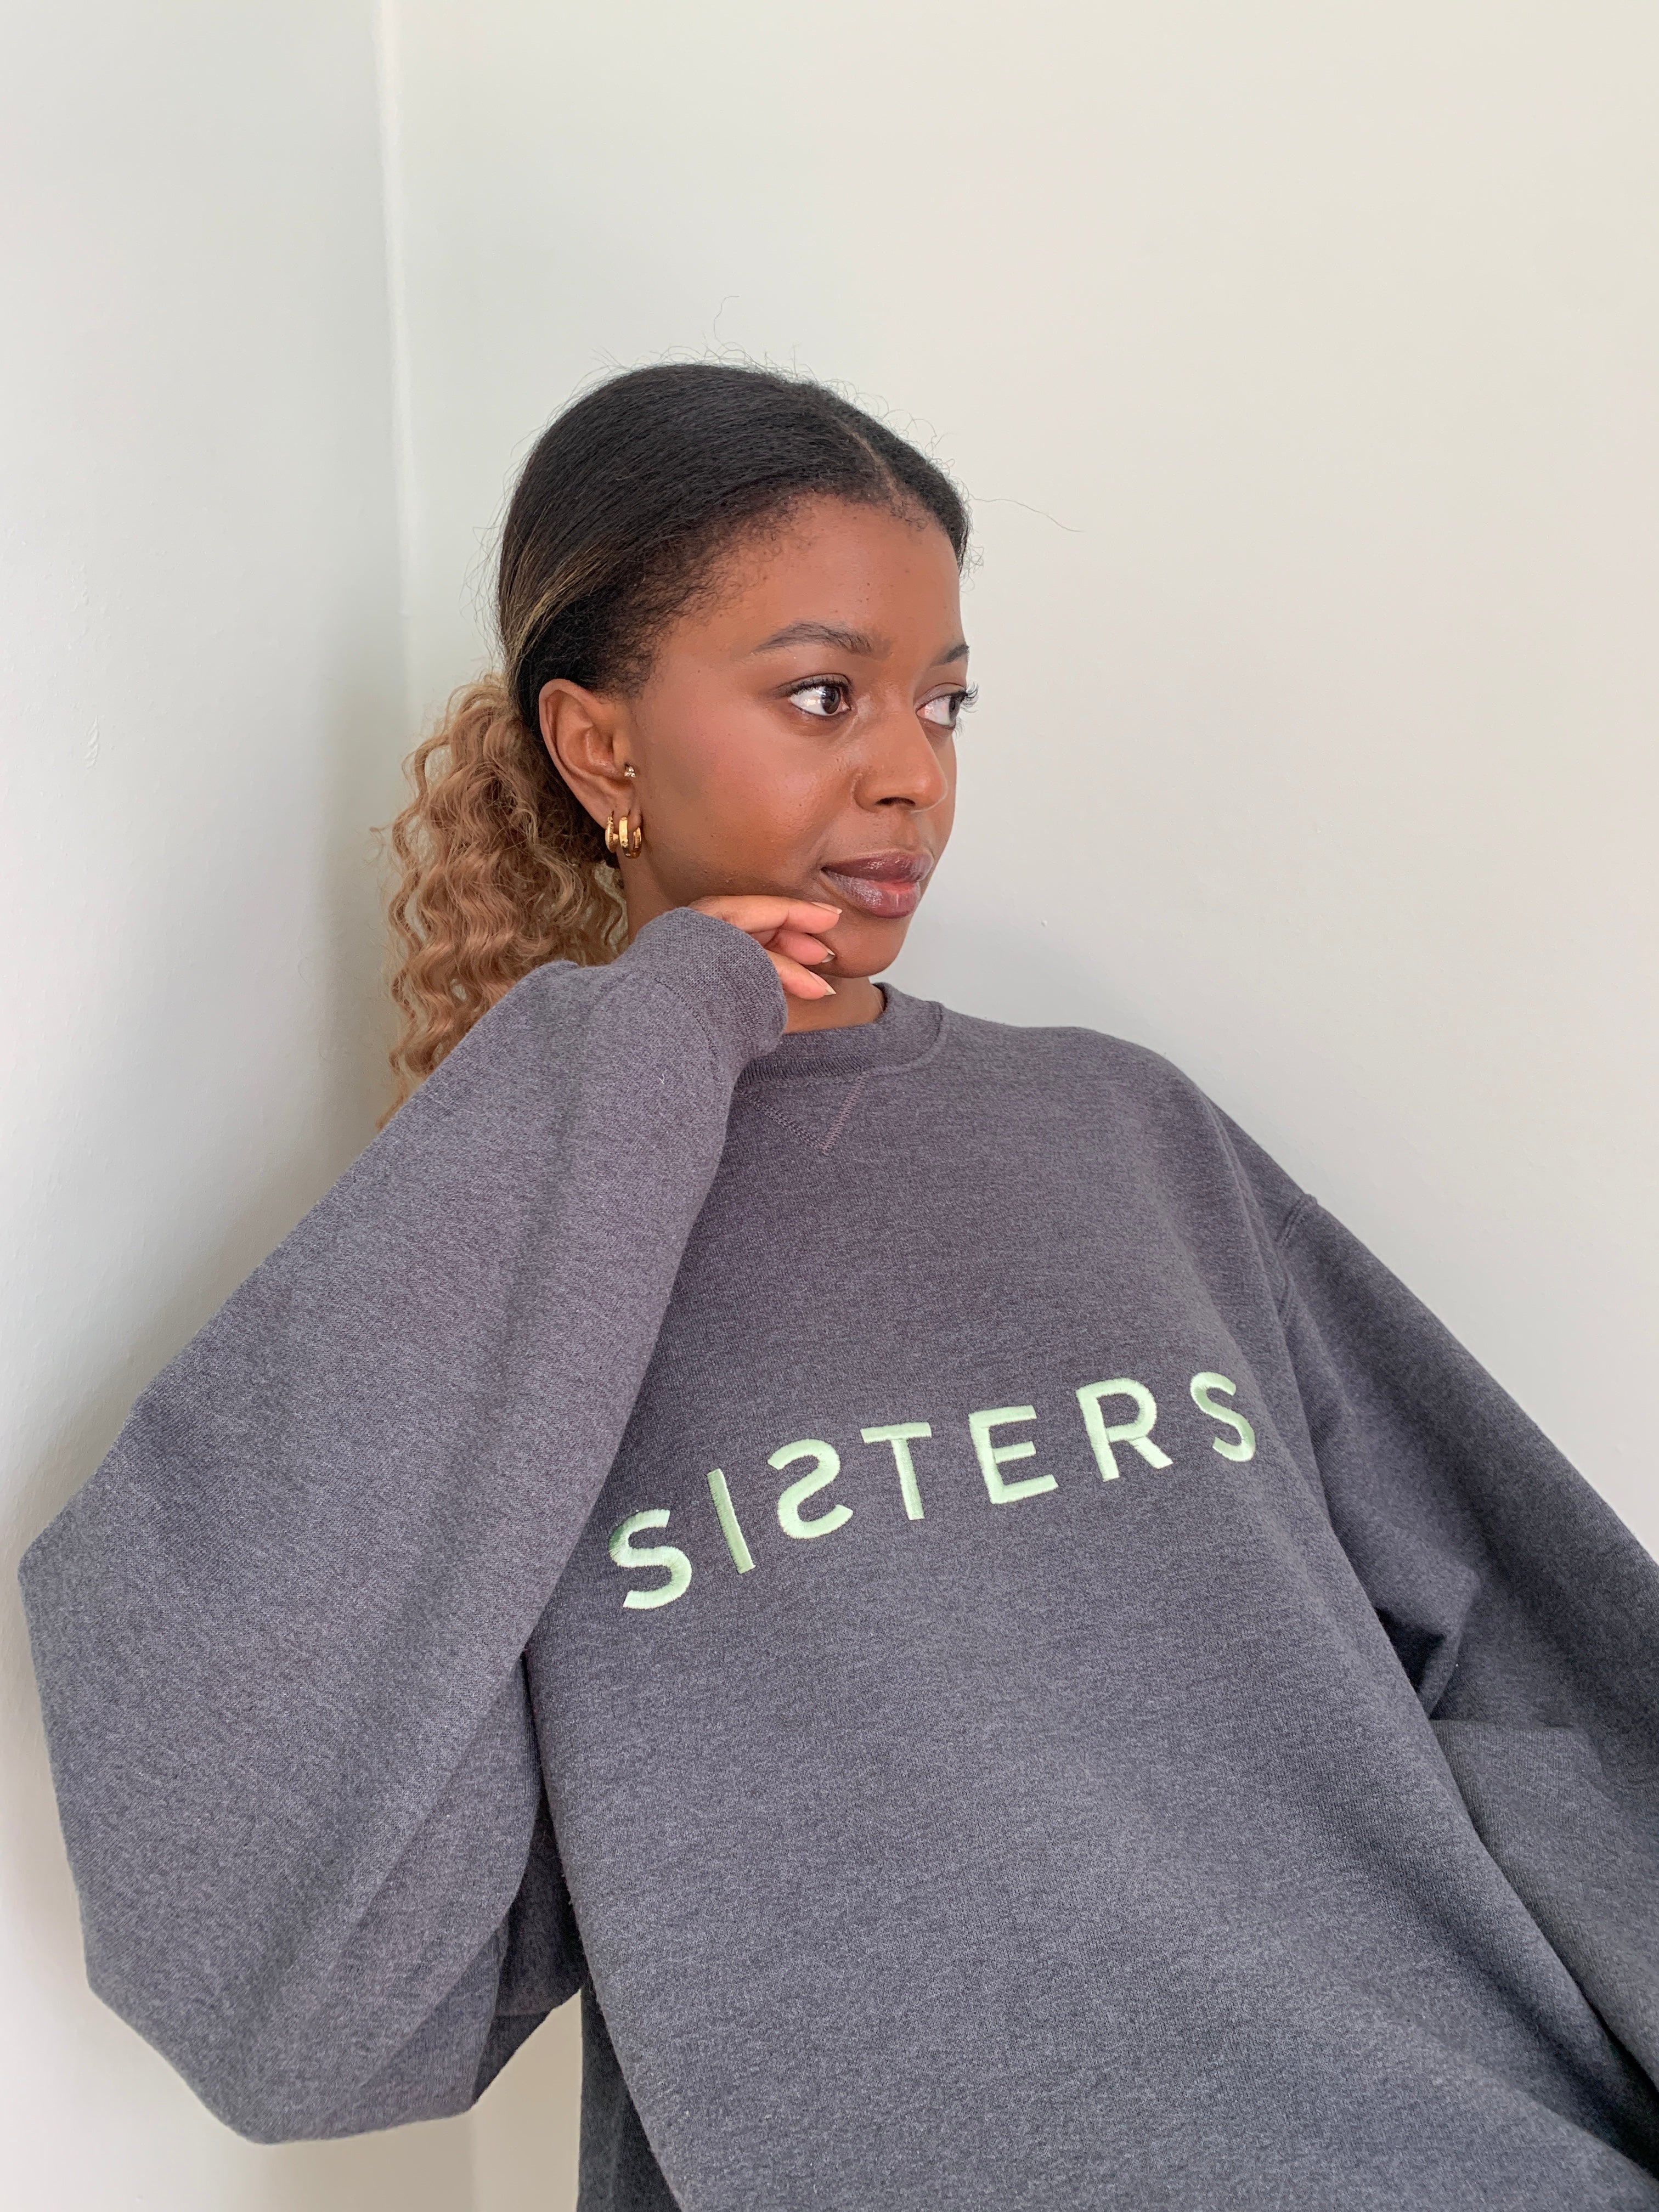 SISTERS embroidered sweatshirt medium SS205